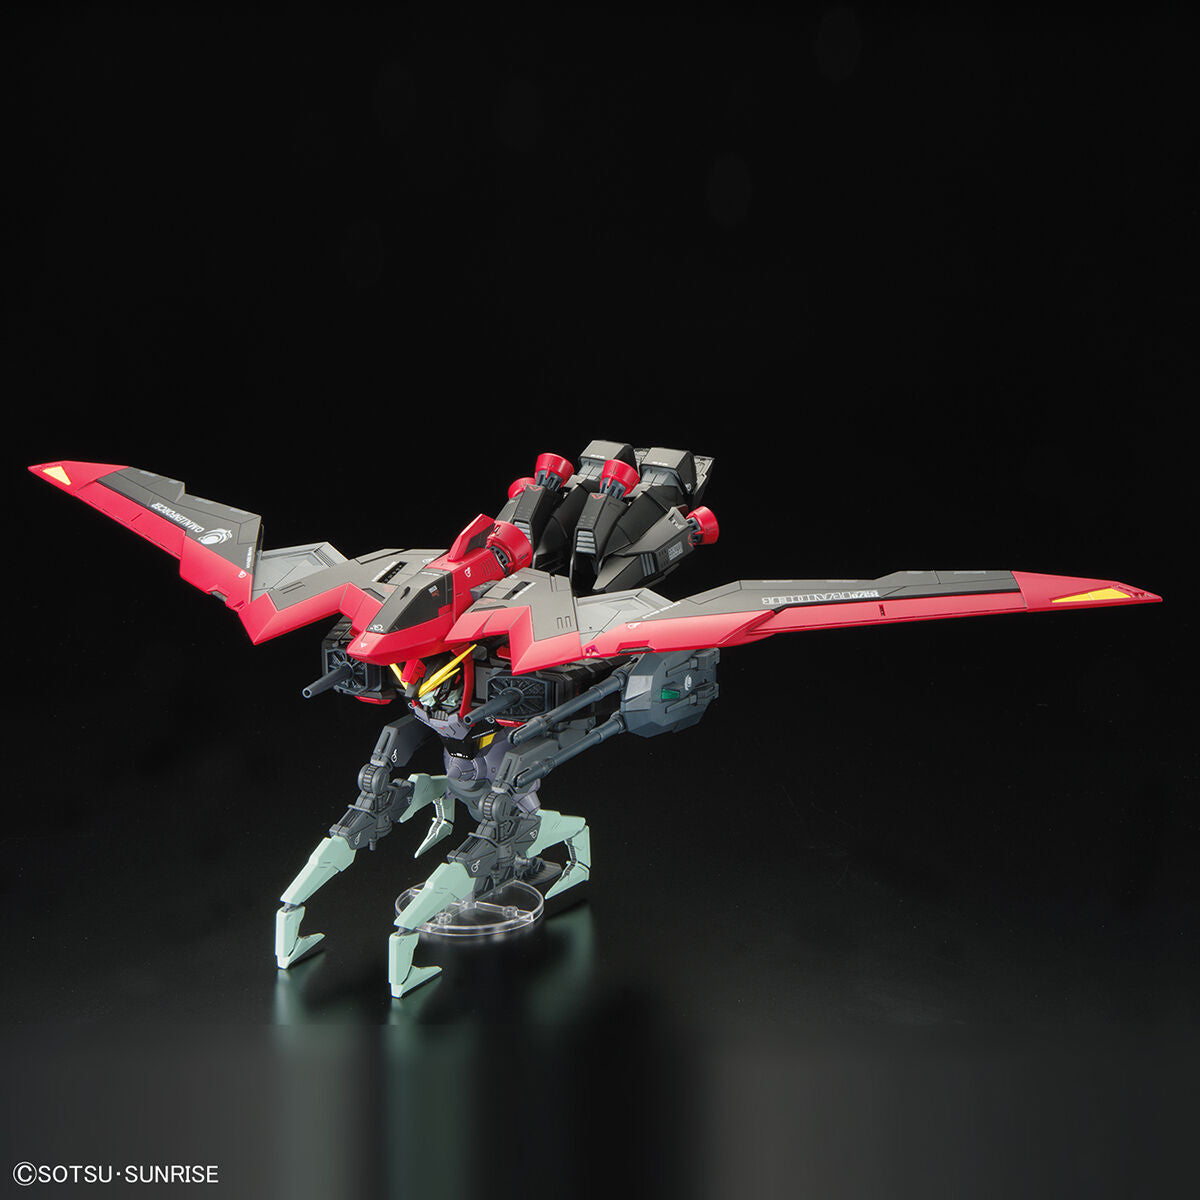 Gundam Seed Full Mechanics 1/100 Raider Gundam